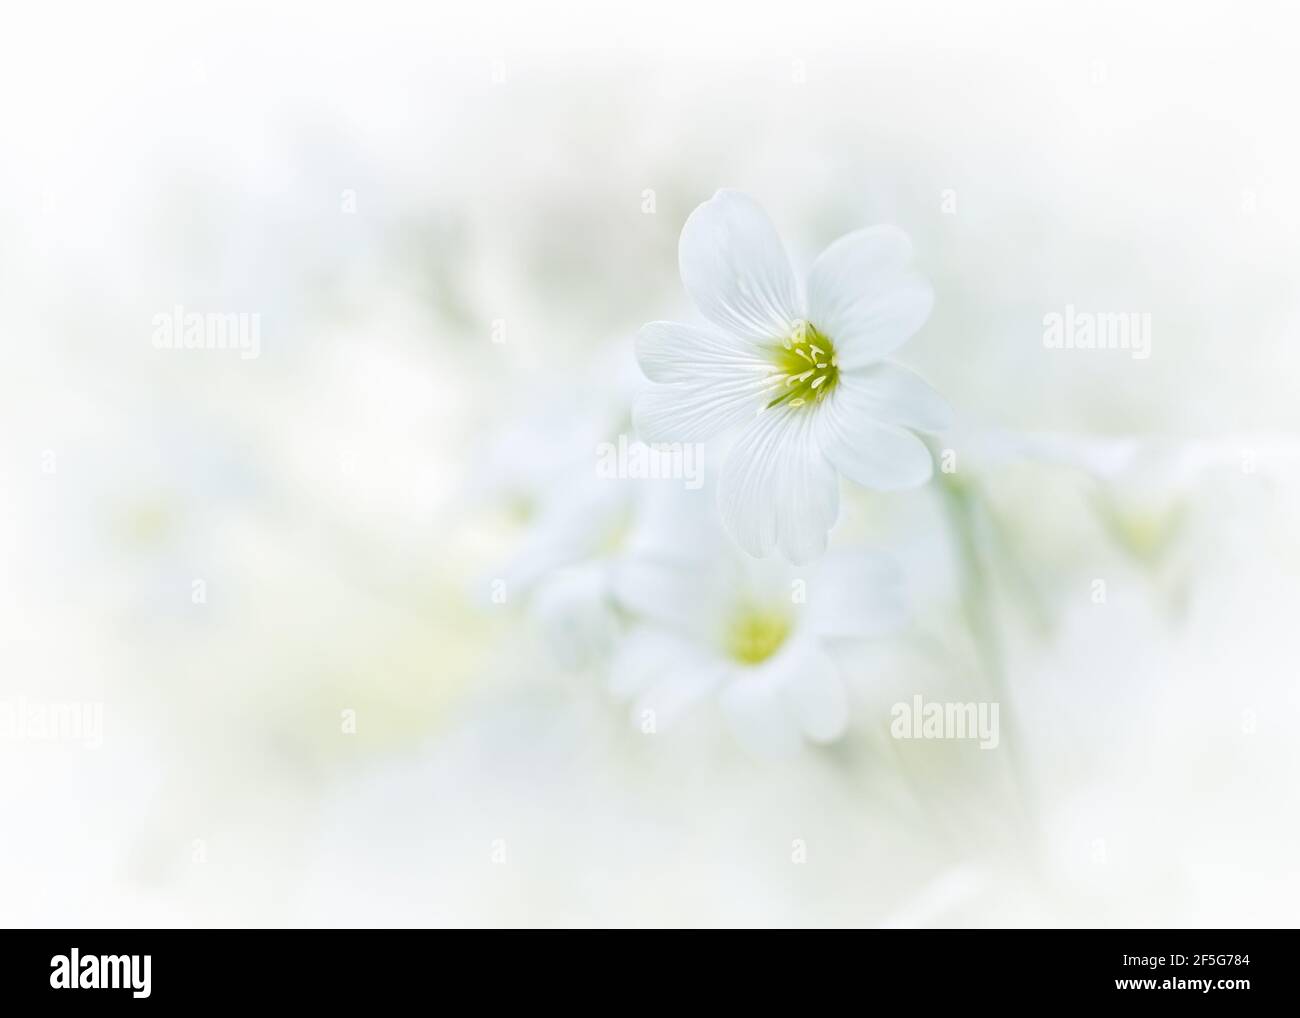 Joli gros plan macro du minuscule tomentosum blanc, également connu sous le nom de neige dans les fleurs d'été. Banque D'Images